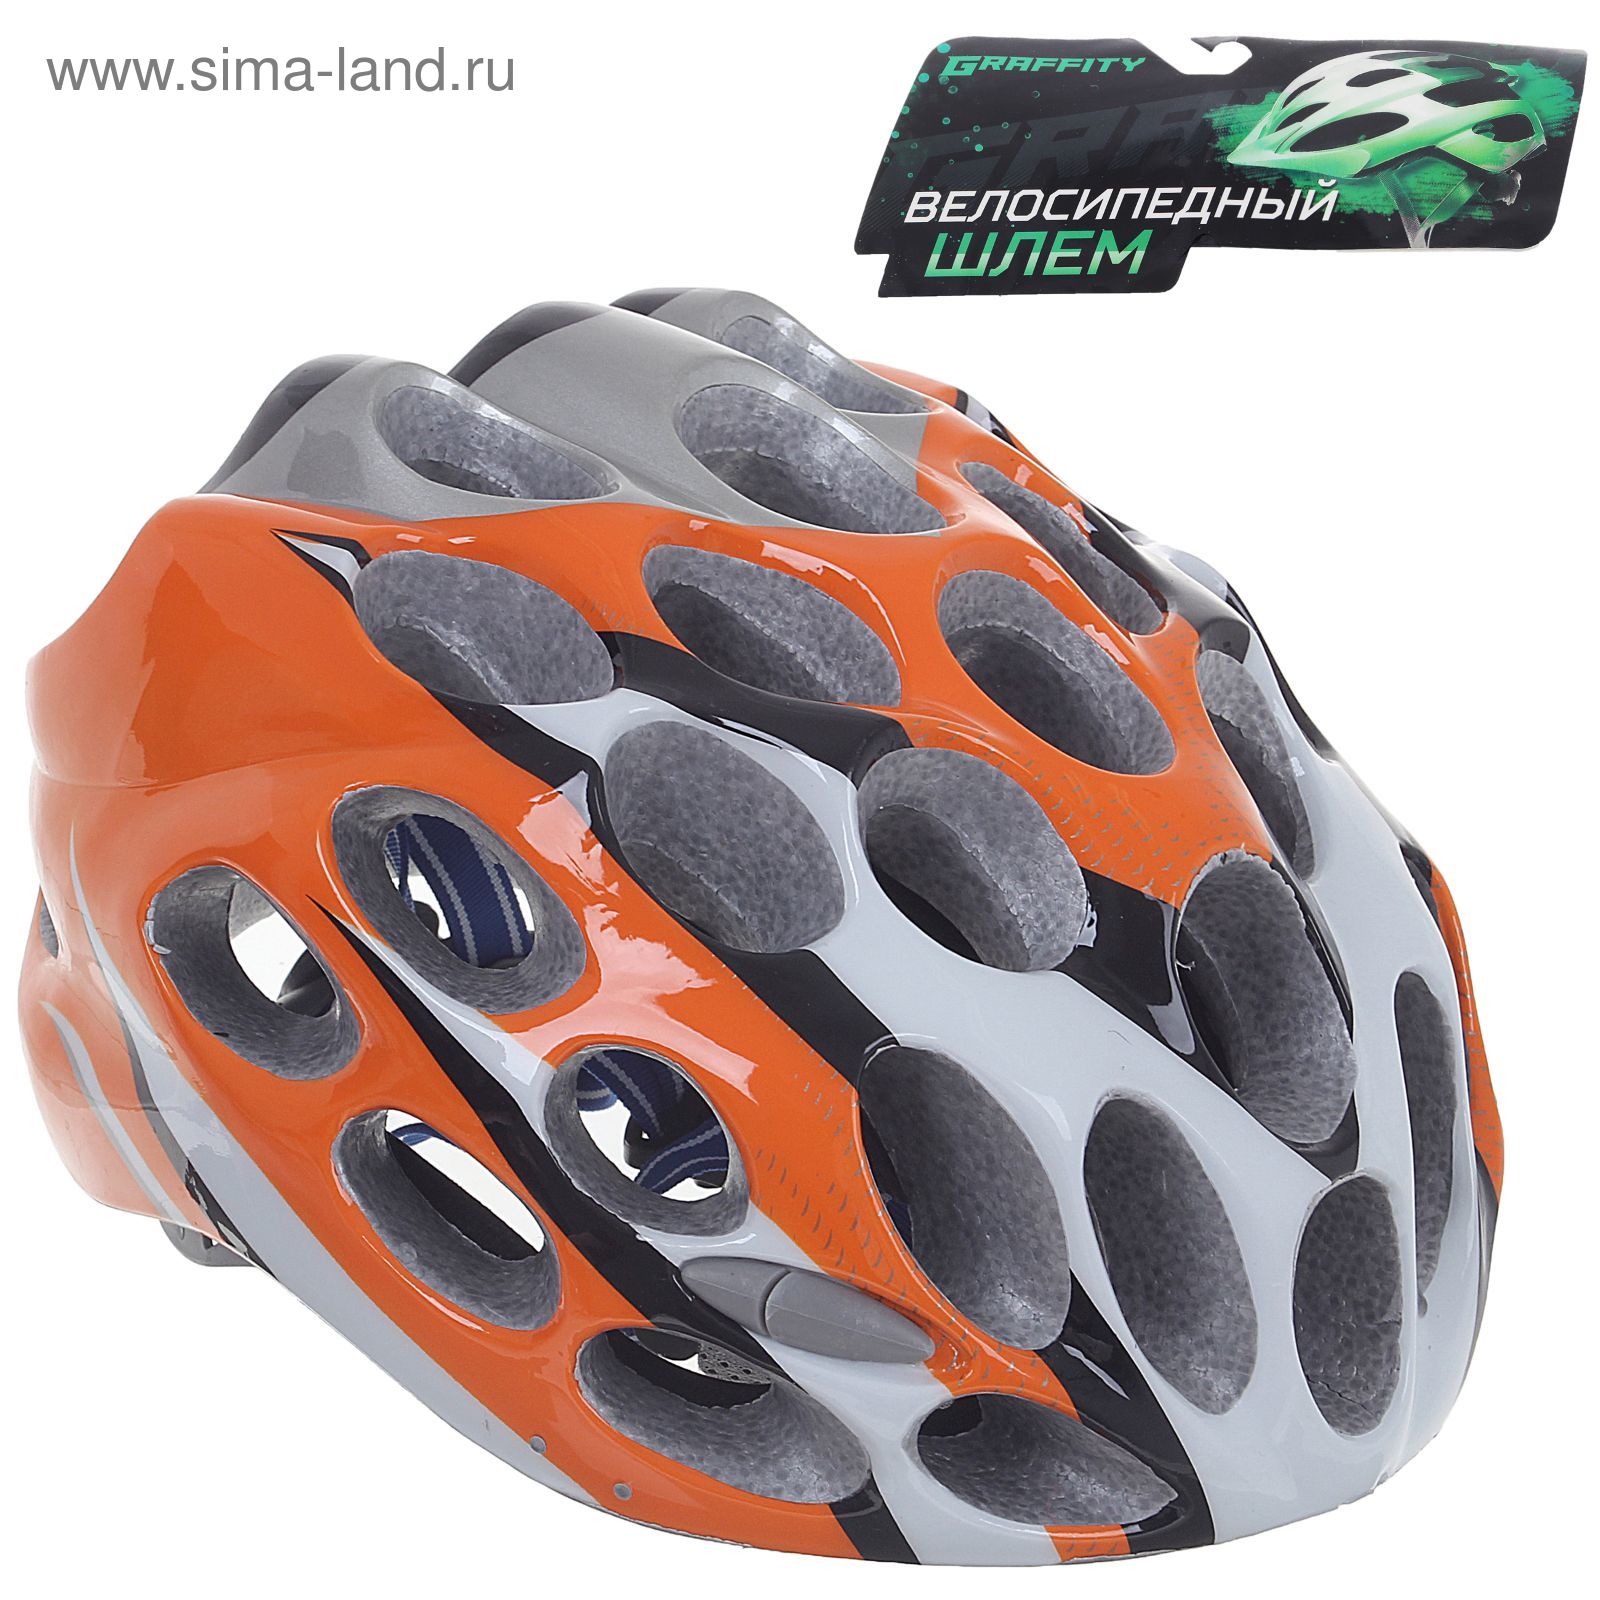 Шлем велосипедиста взрослый ОТ-T39, оранжевый, диаметр 54 см